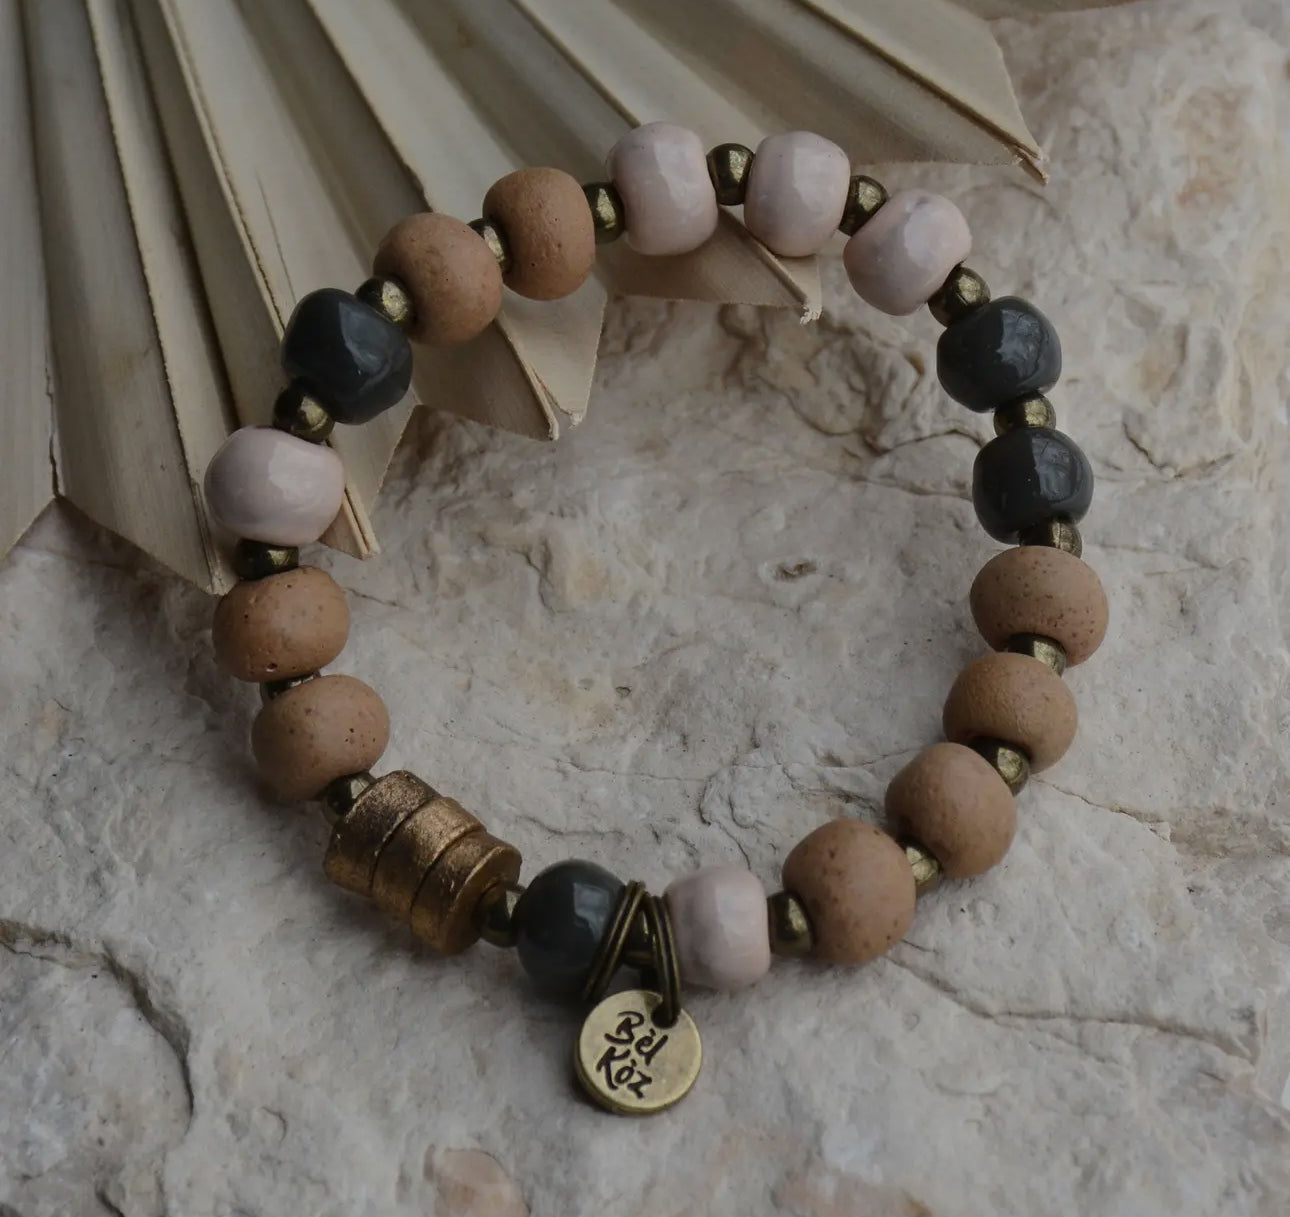 Bel Koz Haiti Bracelets (Several Colors)